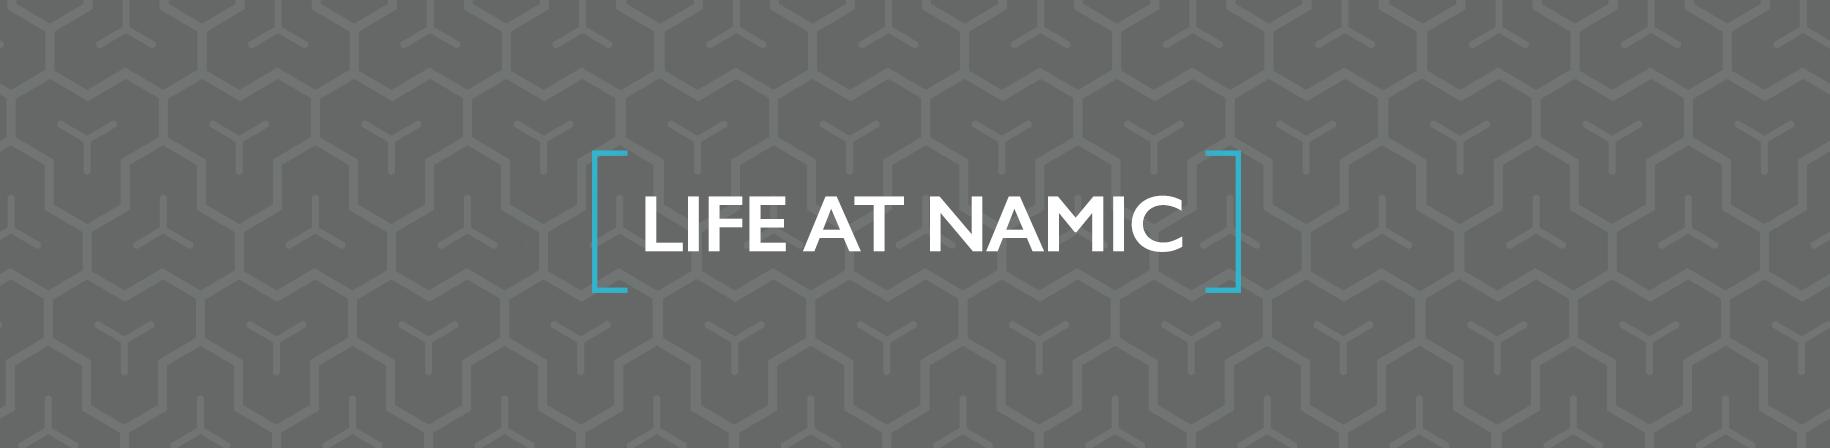 NAMIC Life